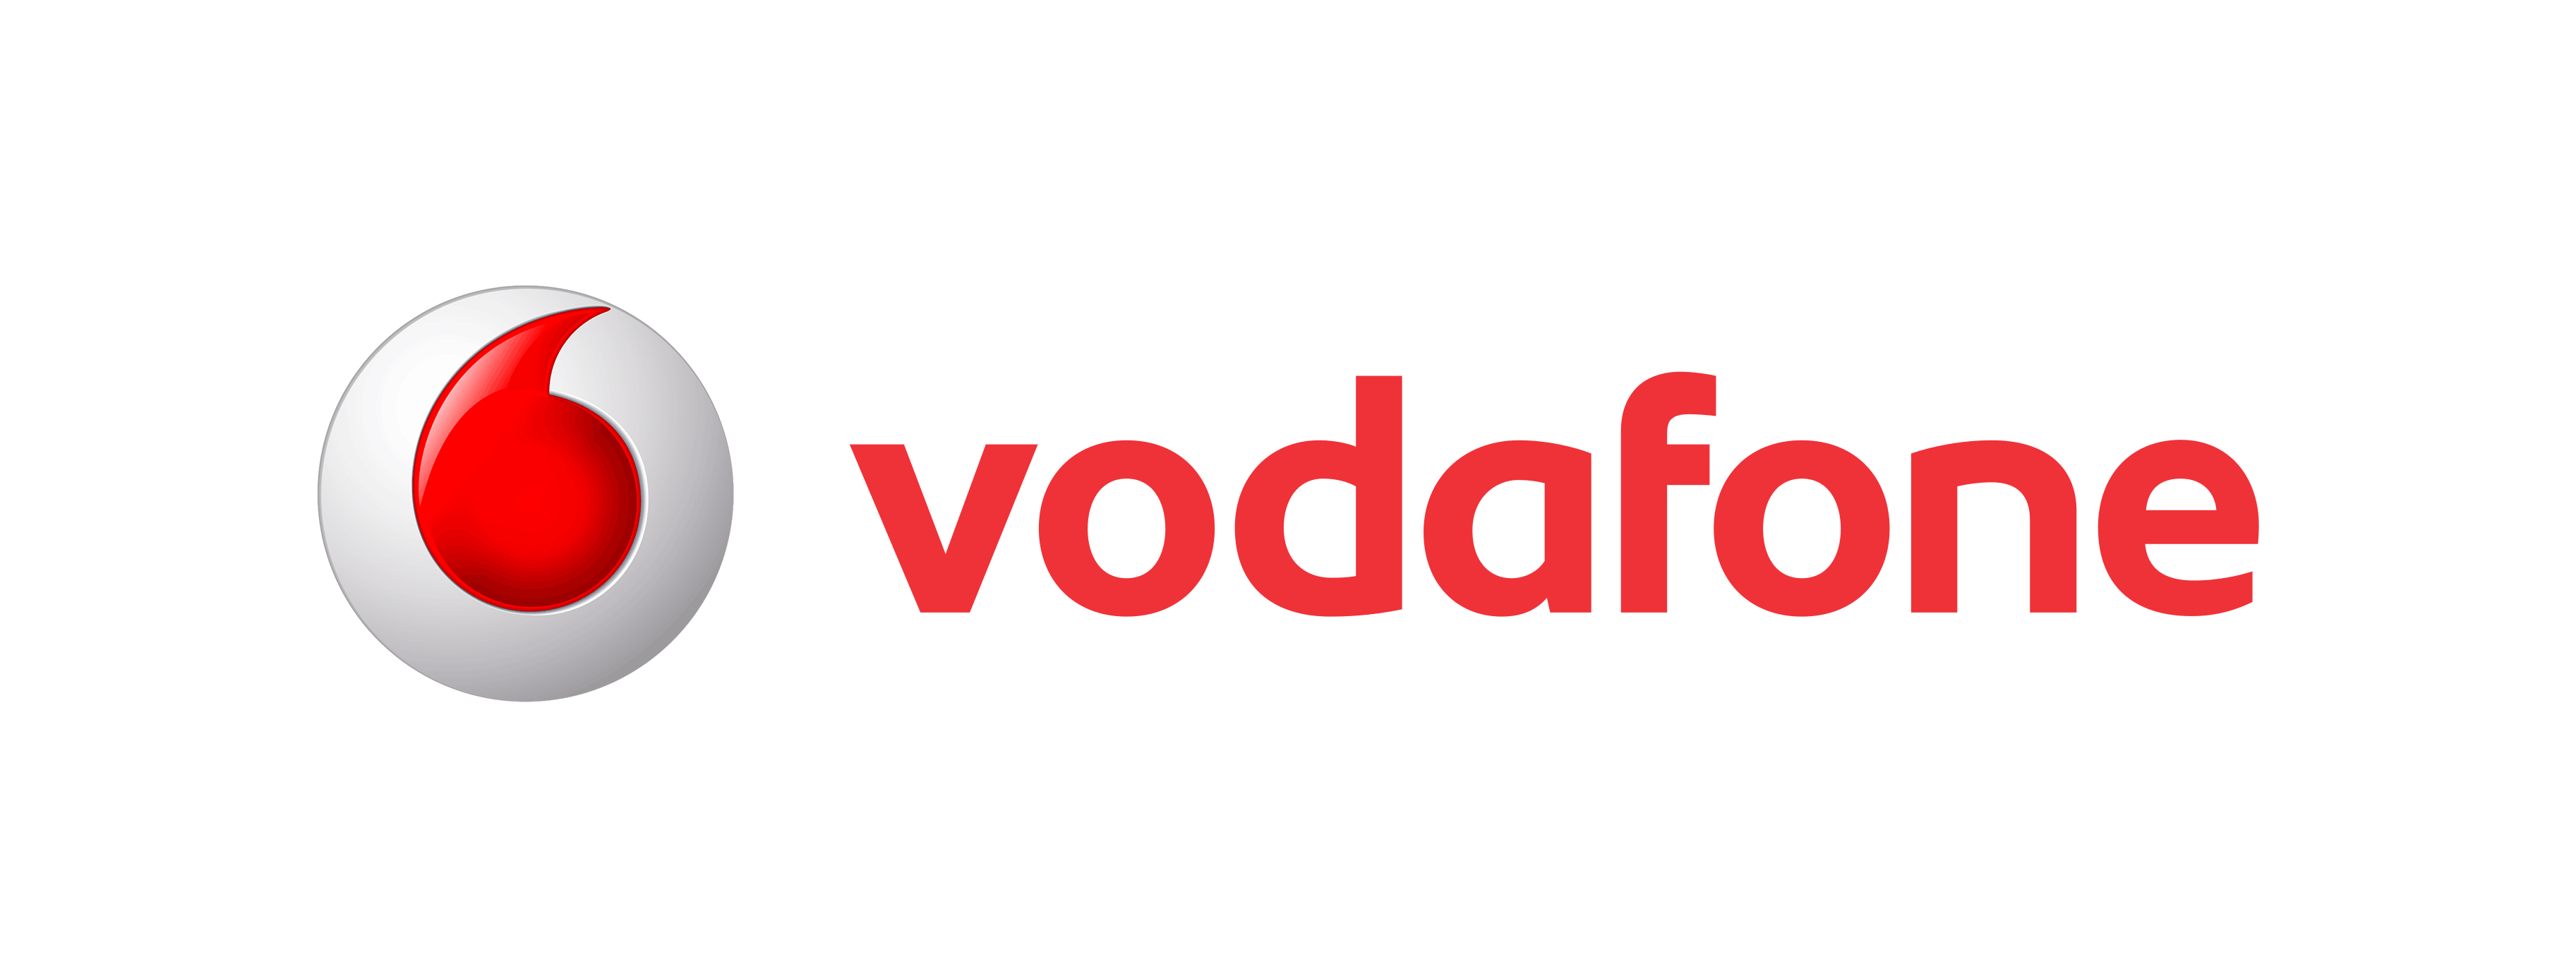 Vodafone Logo Png Images, Vod